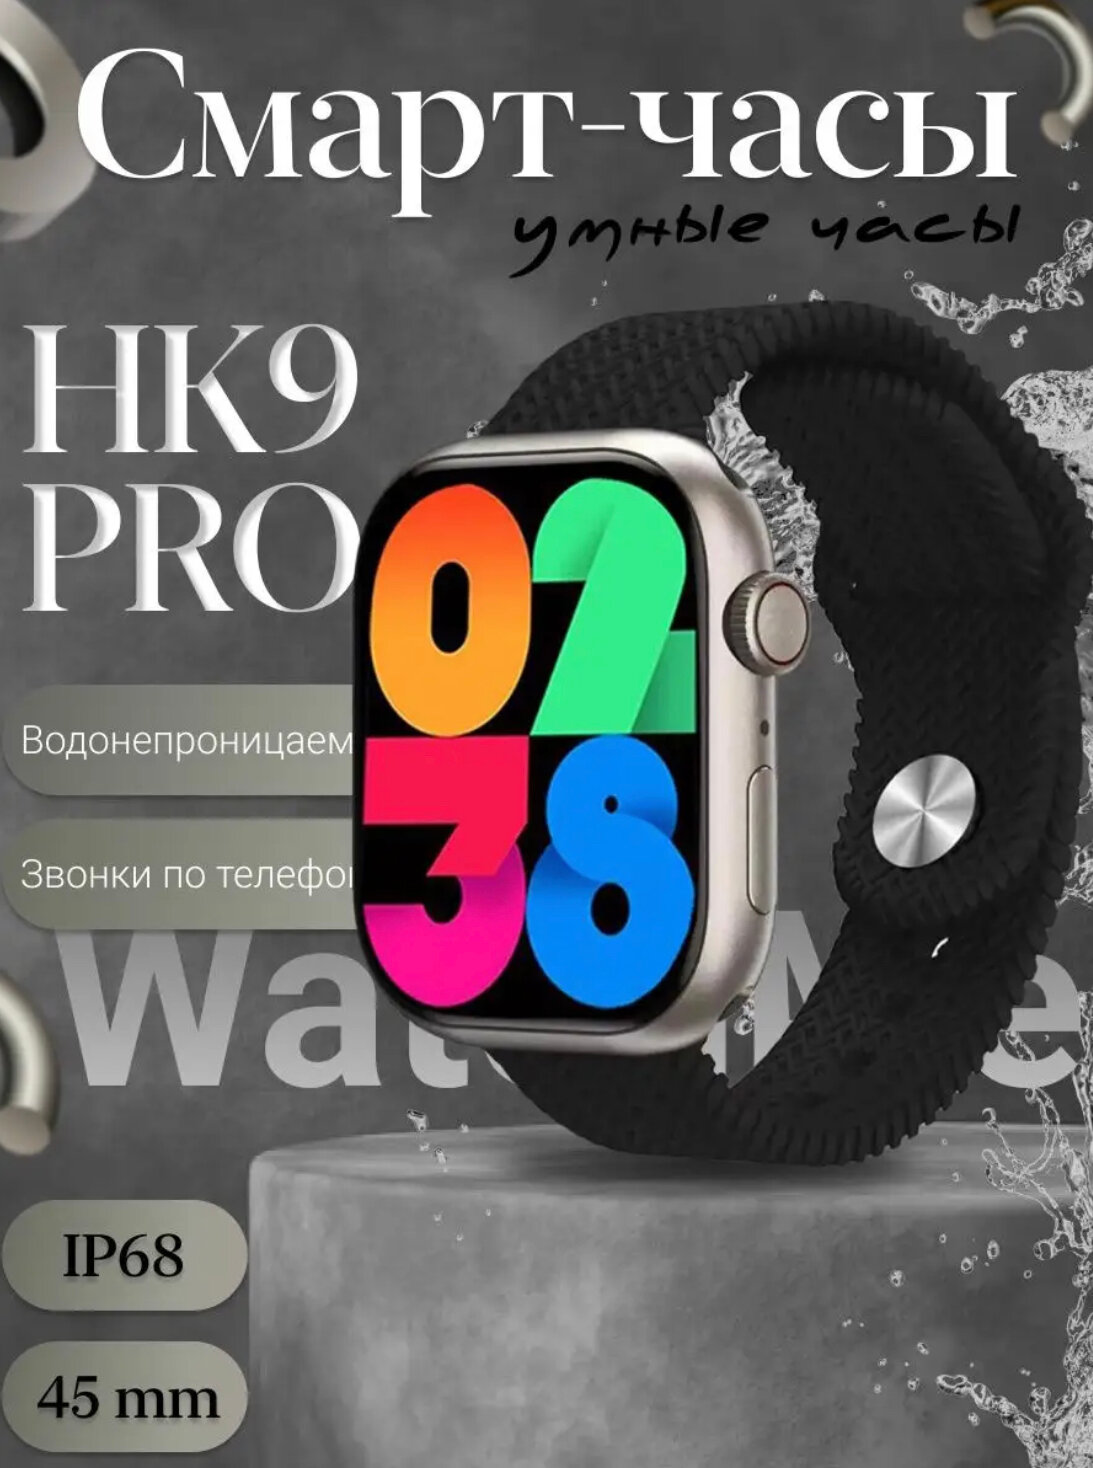 Смарт часы HK9 PRO AMOLED / Умные часы iOS Android черные